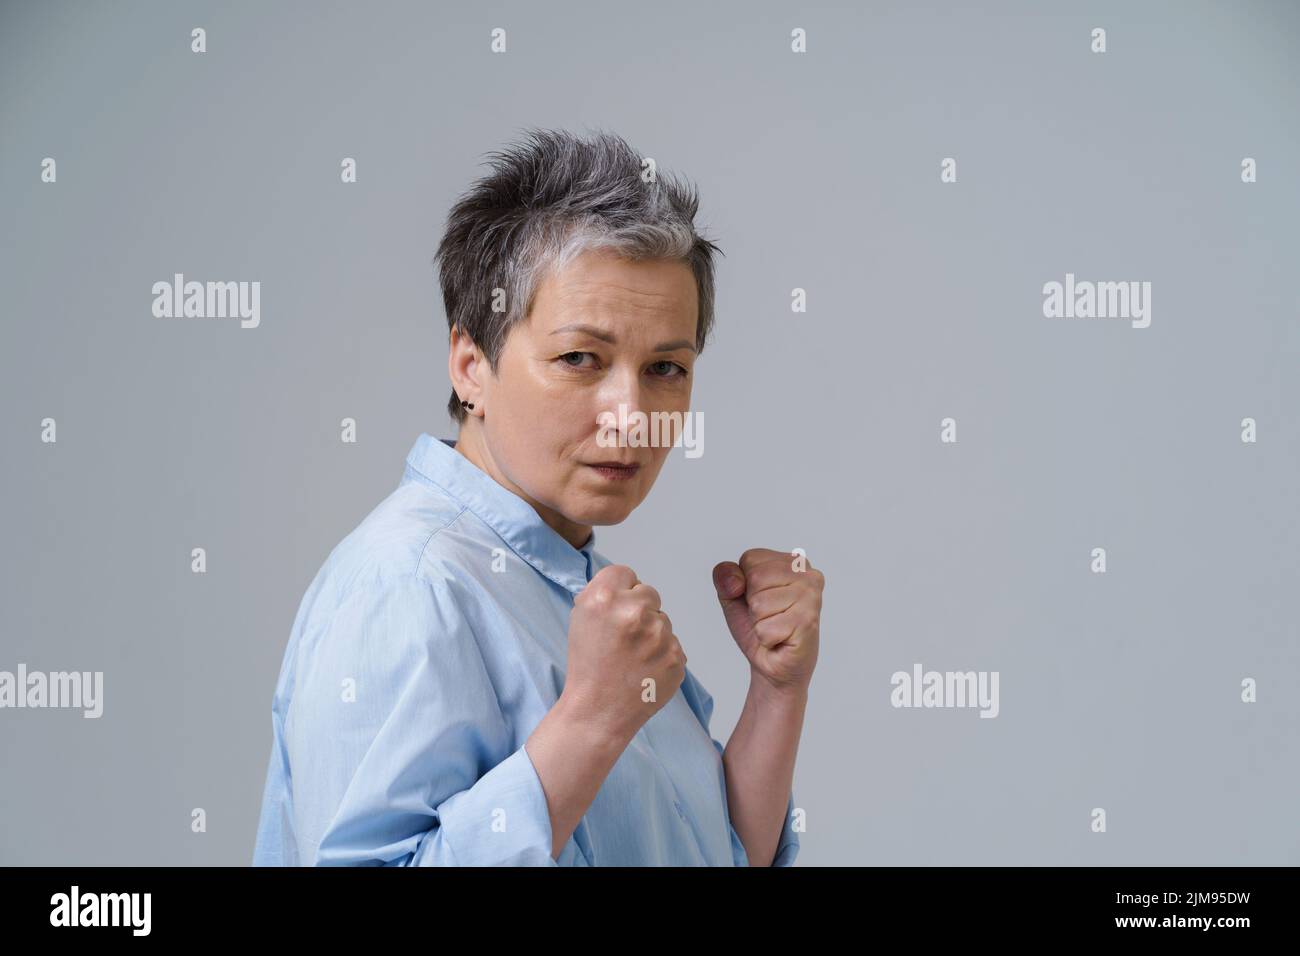 Femme effrayée avec les mains mises dans les poings. Une femme âgée aux cheveux gris se pose comme combattant de boxe sur le point de se tenir debout ou de se protéger. Concept de traite des êtres humains. Femme confiante, forte et agressive. Banque D'Images